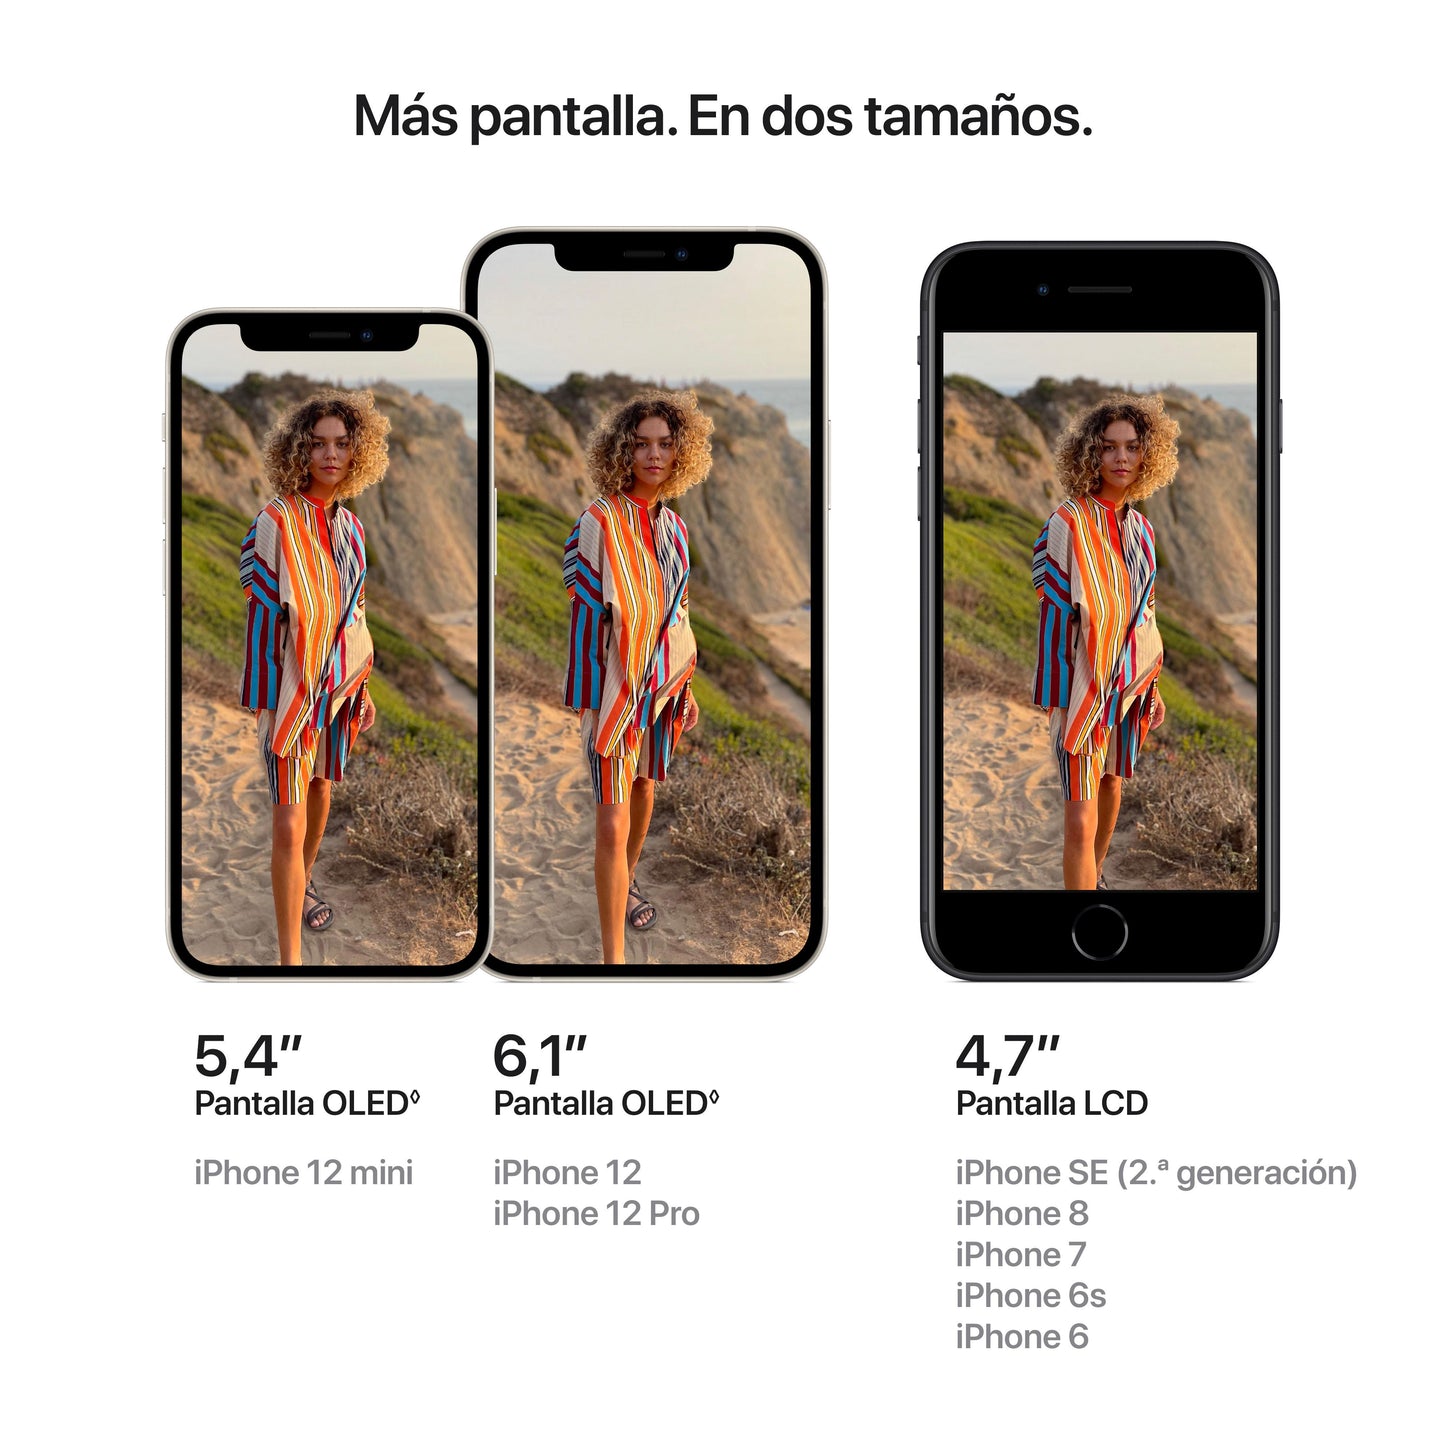 iPhone 12, Malva, 256 GB - Rossellimac